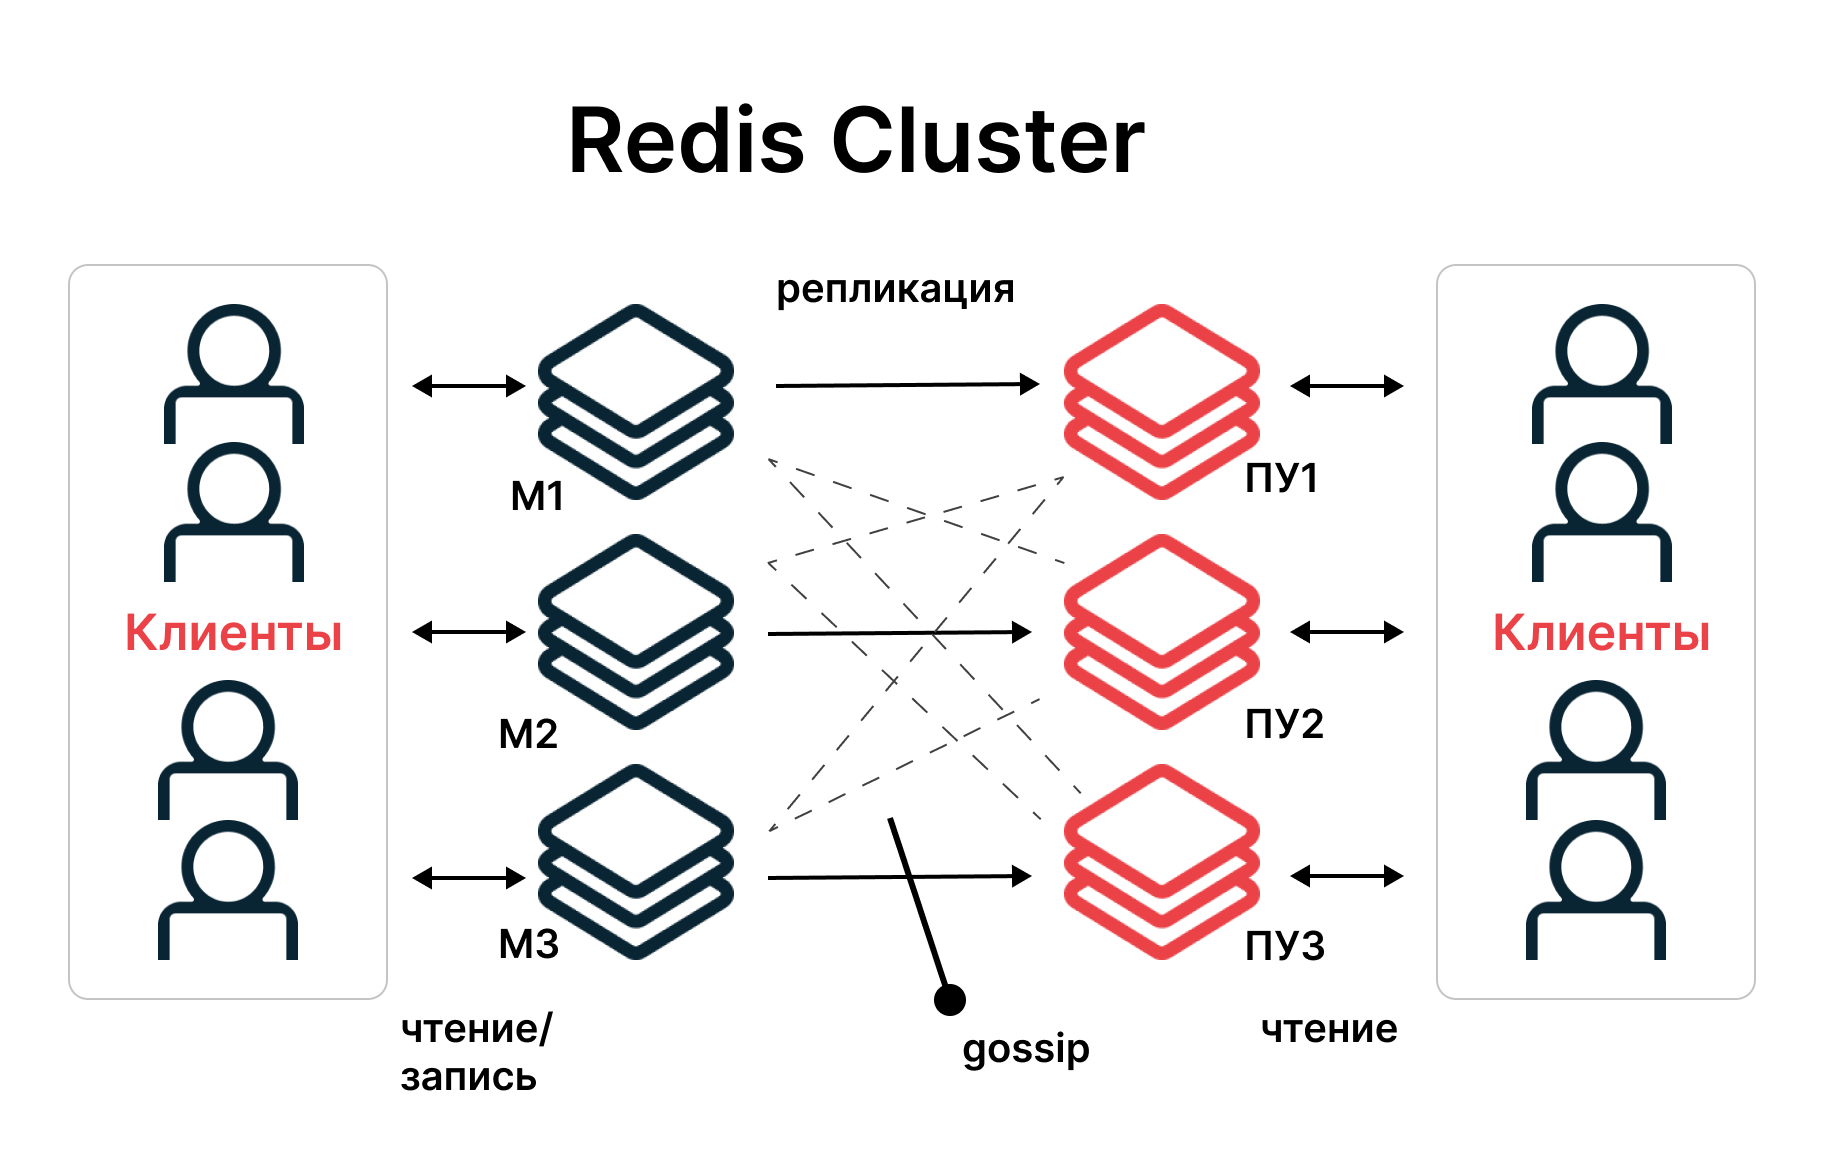 Redis clustering